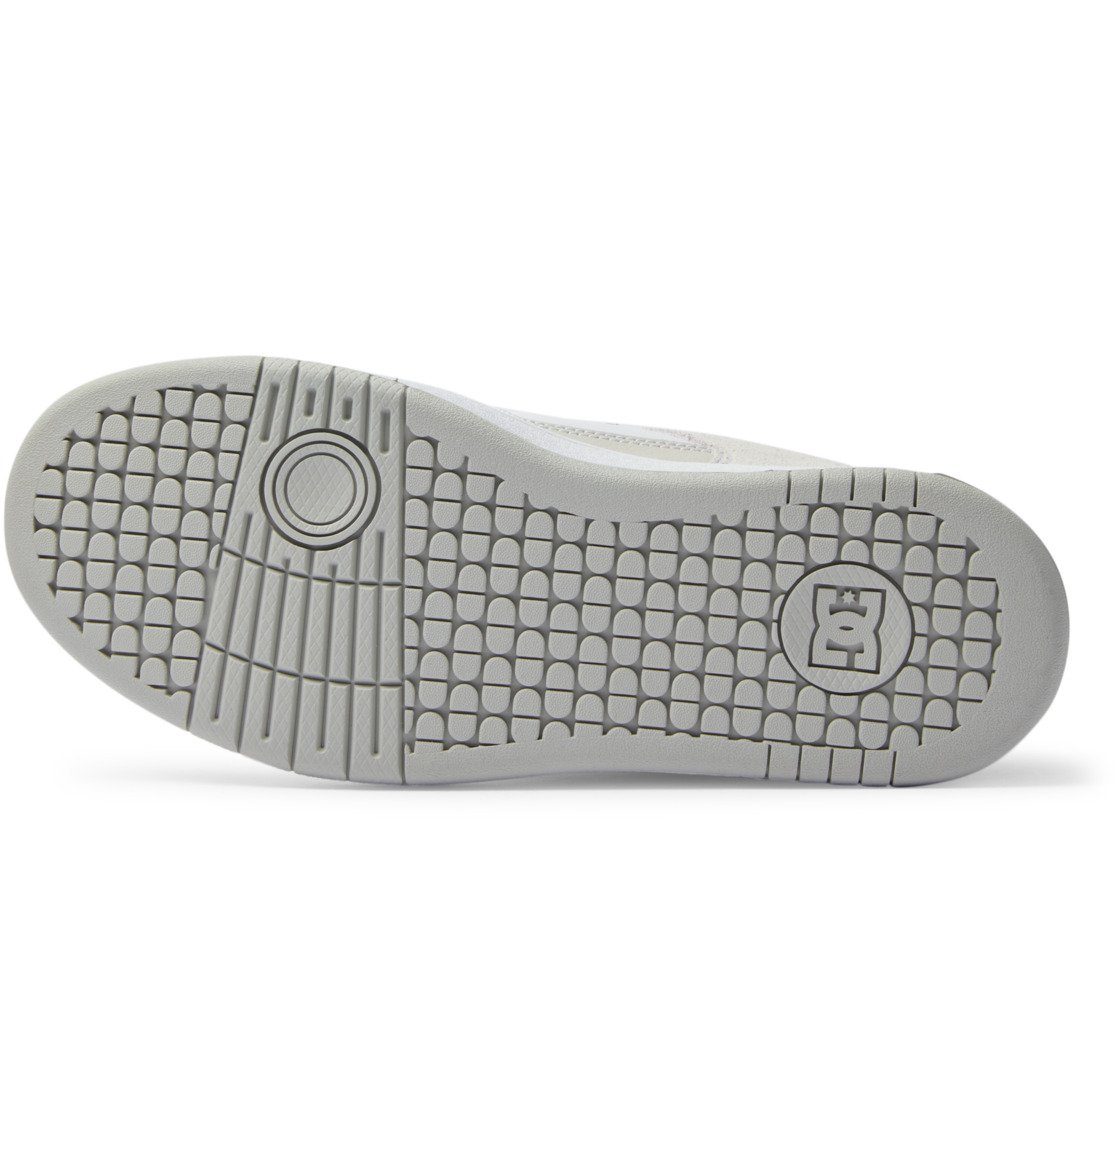 DC Shoes Manteca White Grey/ Sneaker